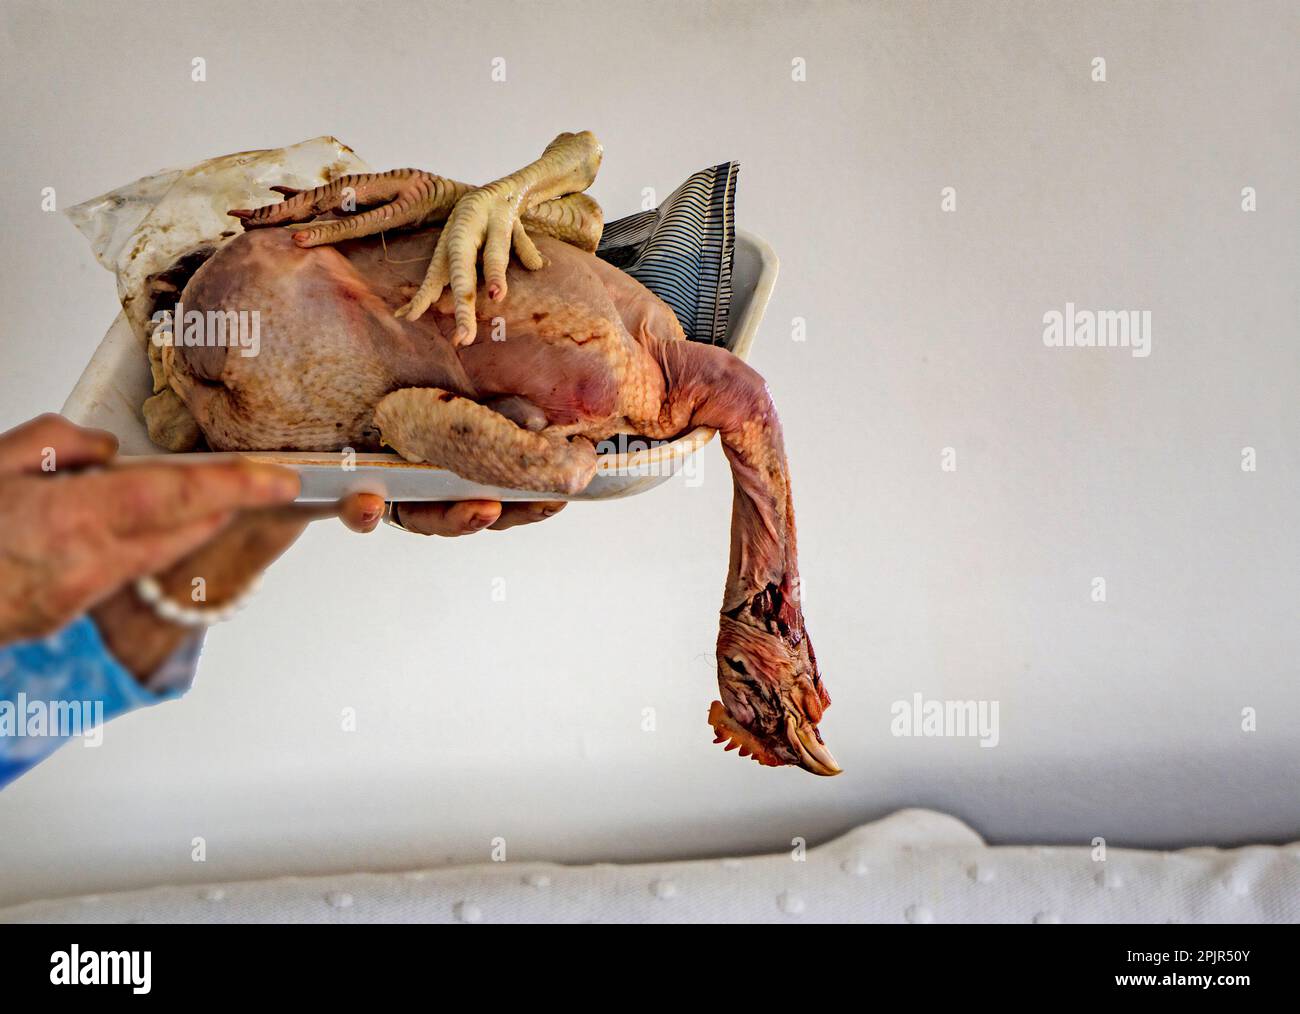 Una testa di pollo cruda ancora attaccata, pronta per la preparazione alla cottura. Foto Stock